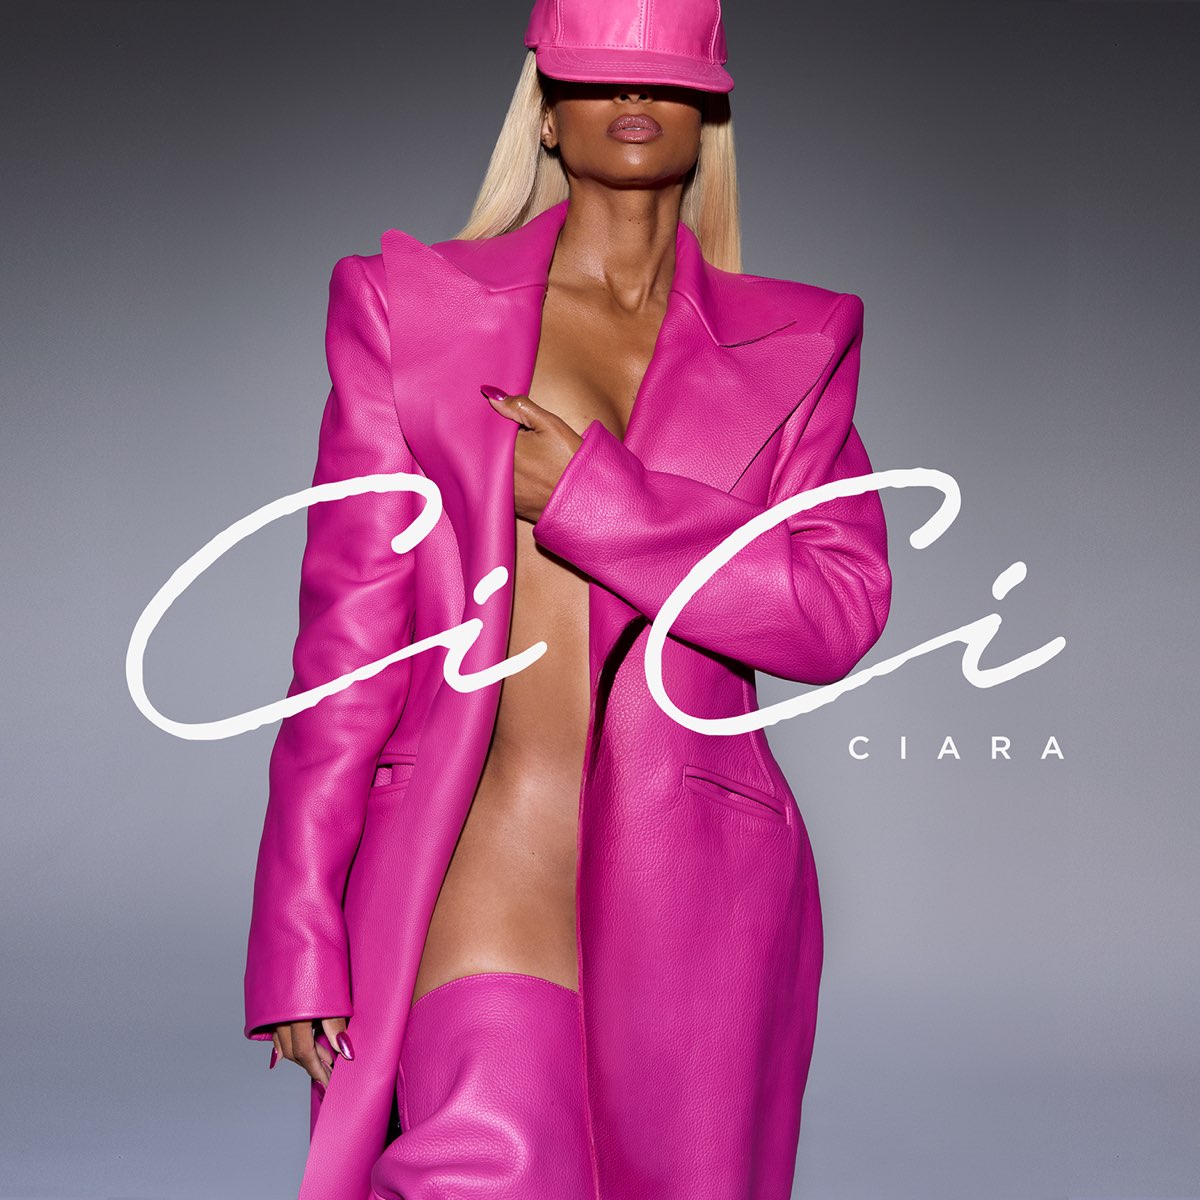 Ciara — CiCi cover artwork